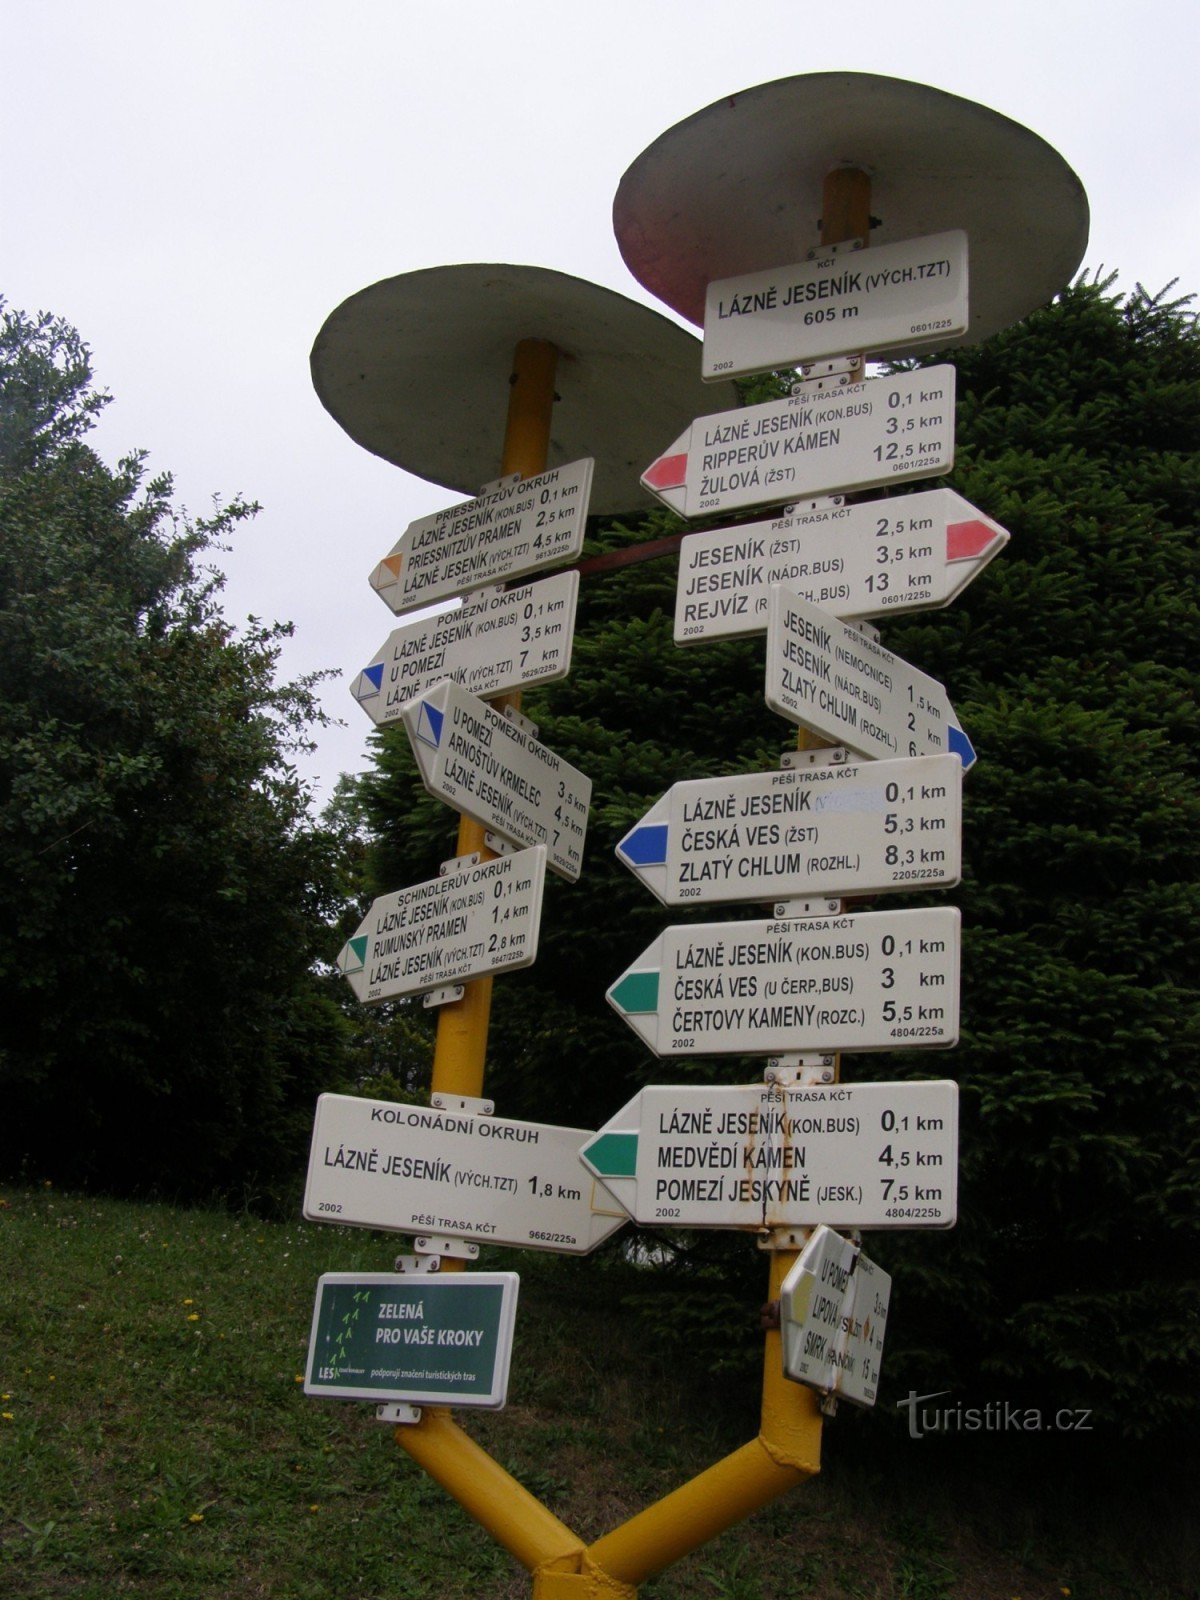 Spa Jeseník - a principal placa turística